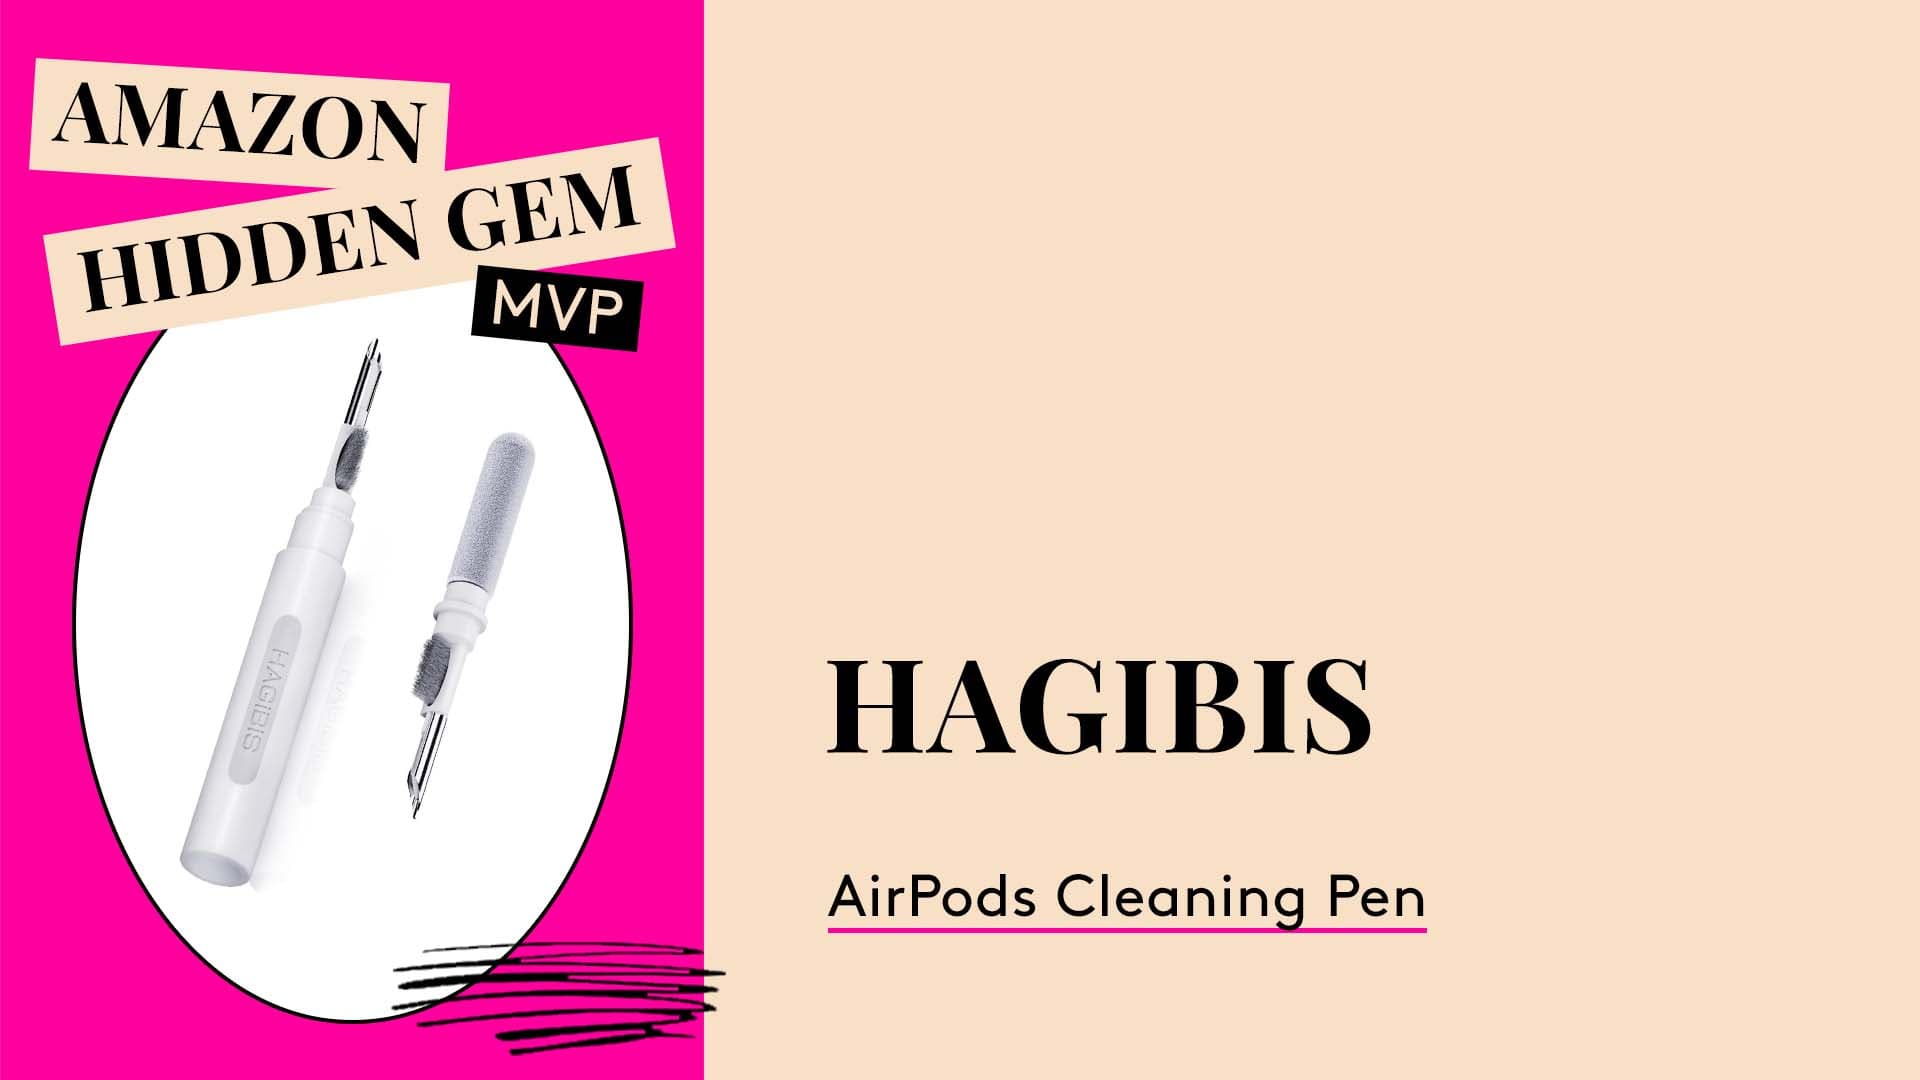 Amazon Hidden Gem MVP. Hagibis AirPods Cleaning Pen.